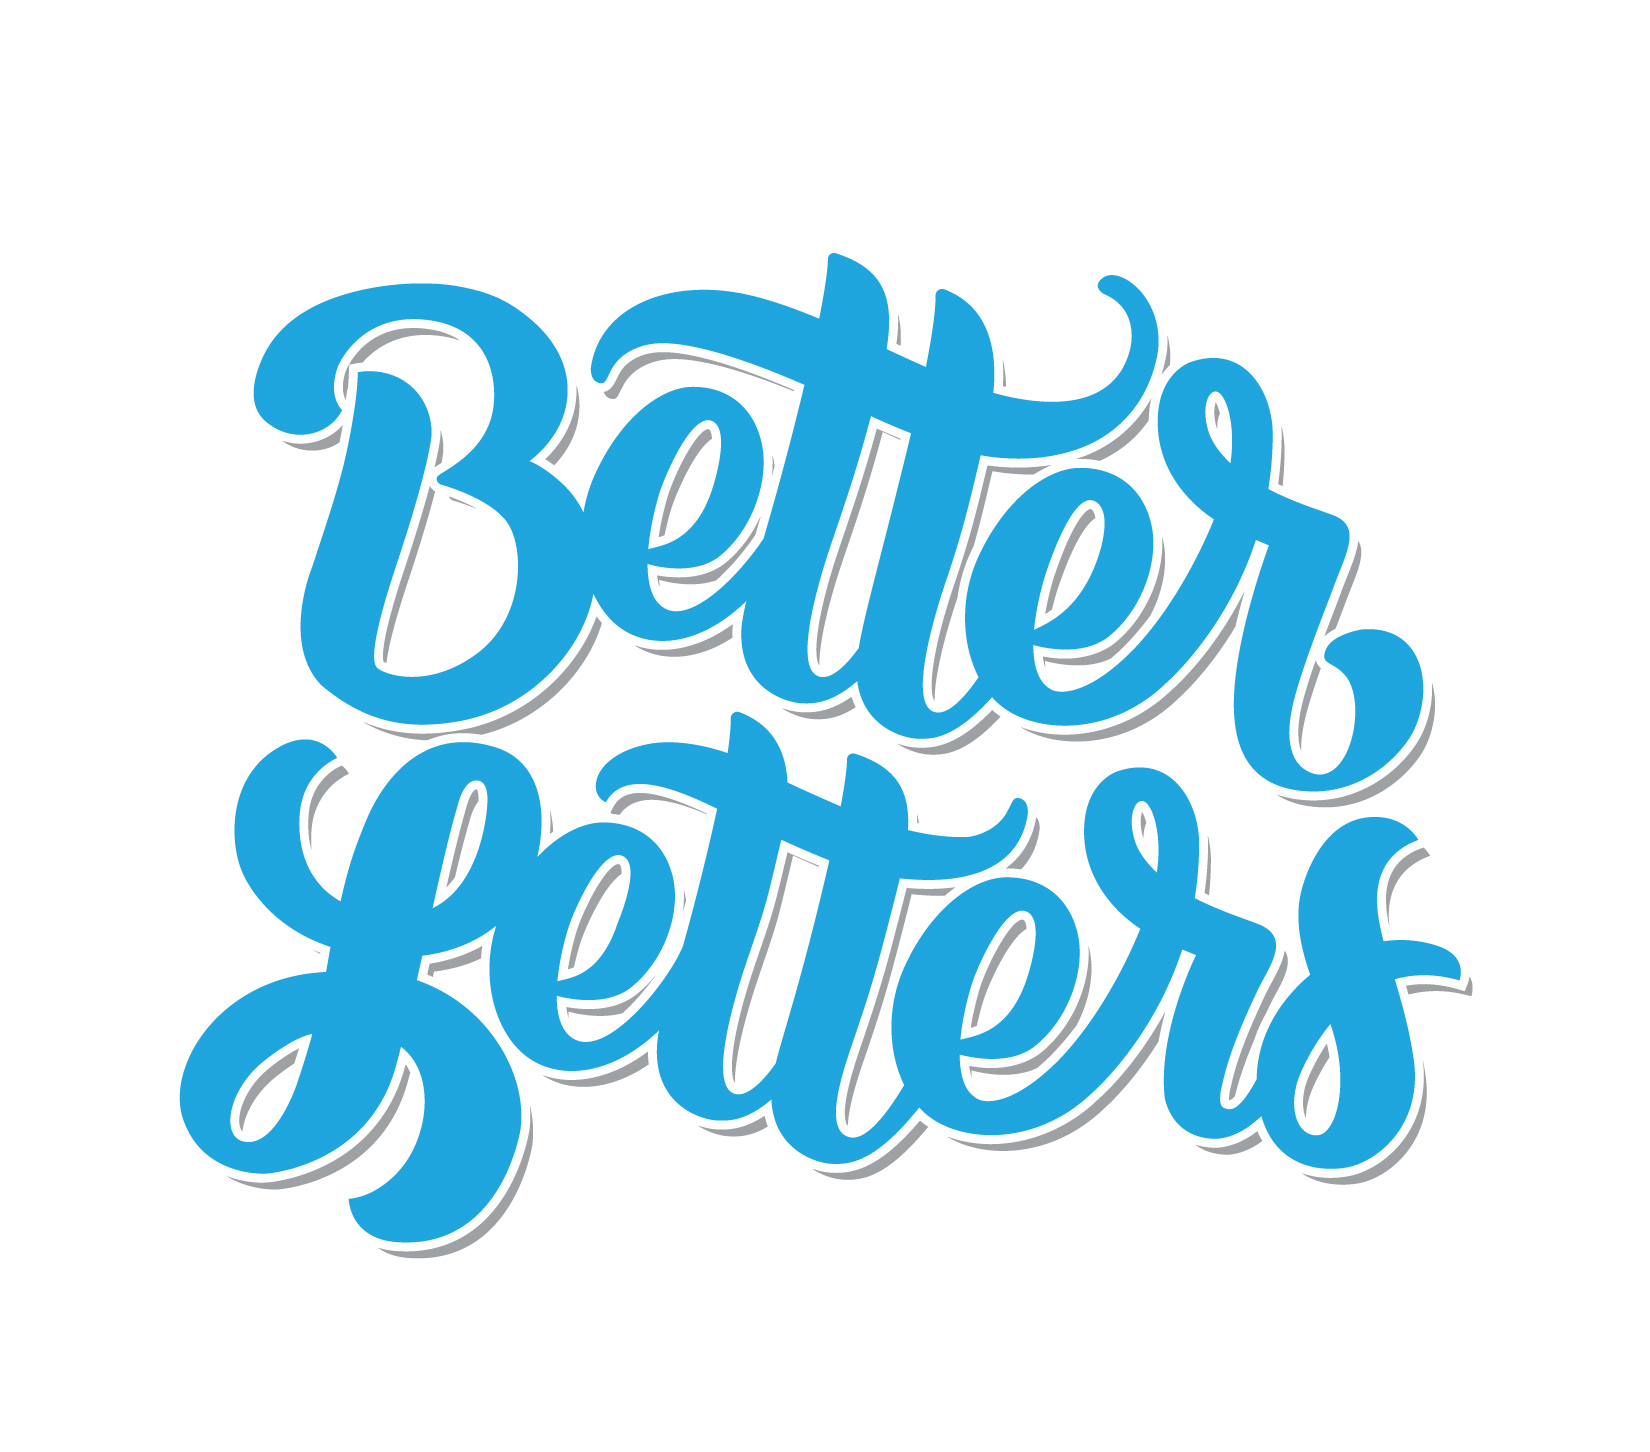 Better Letters-01.jpg